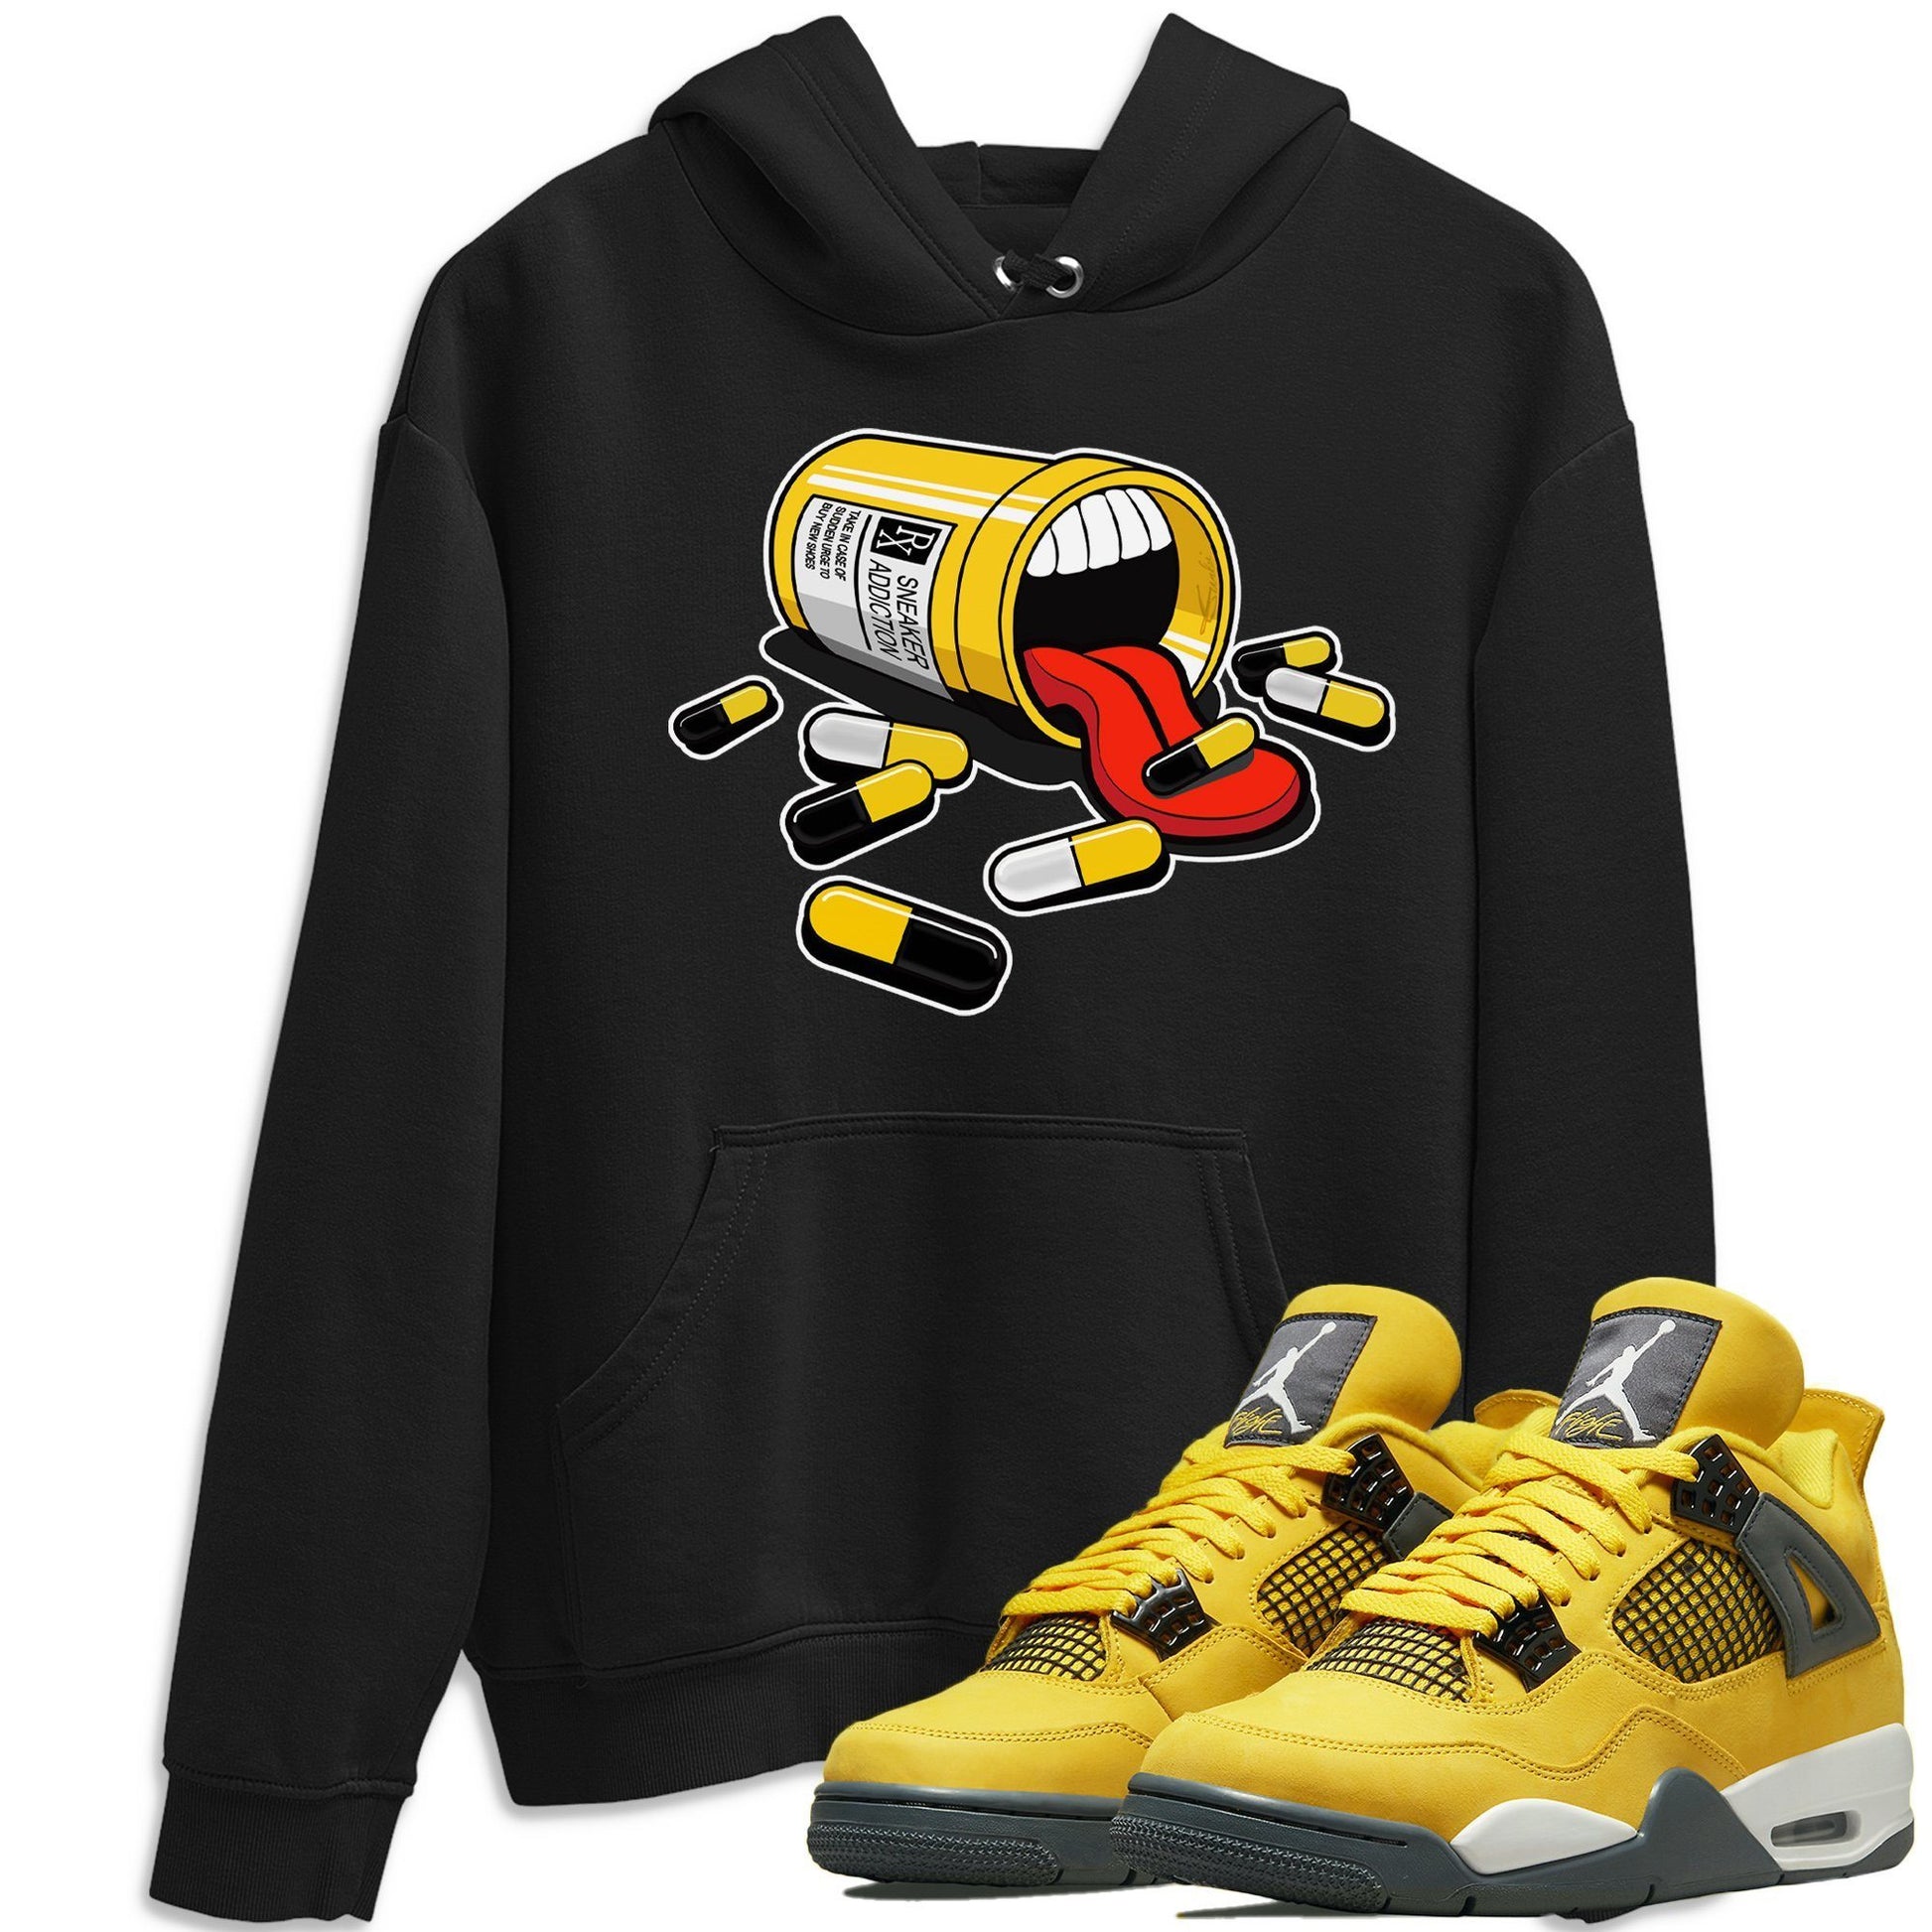 Jordan 4 Lightning Shirt To Match Jordans Sneaker Addiction Sneaker Tees Jordan 4 Lightning Drip Gear Zone Sneaker Matching Clothing Unisex Shirts